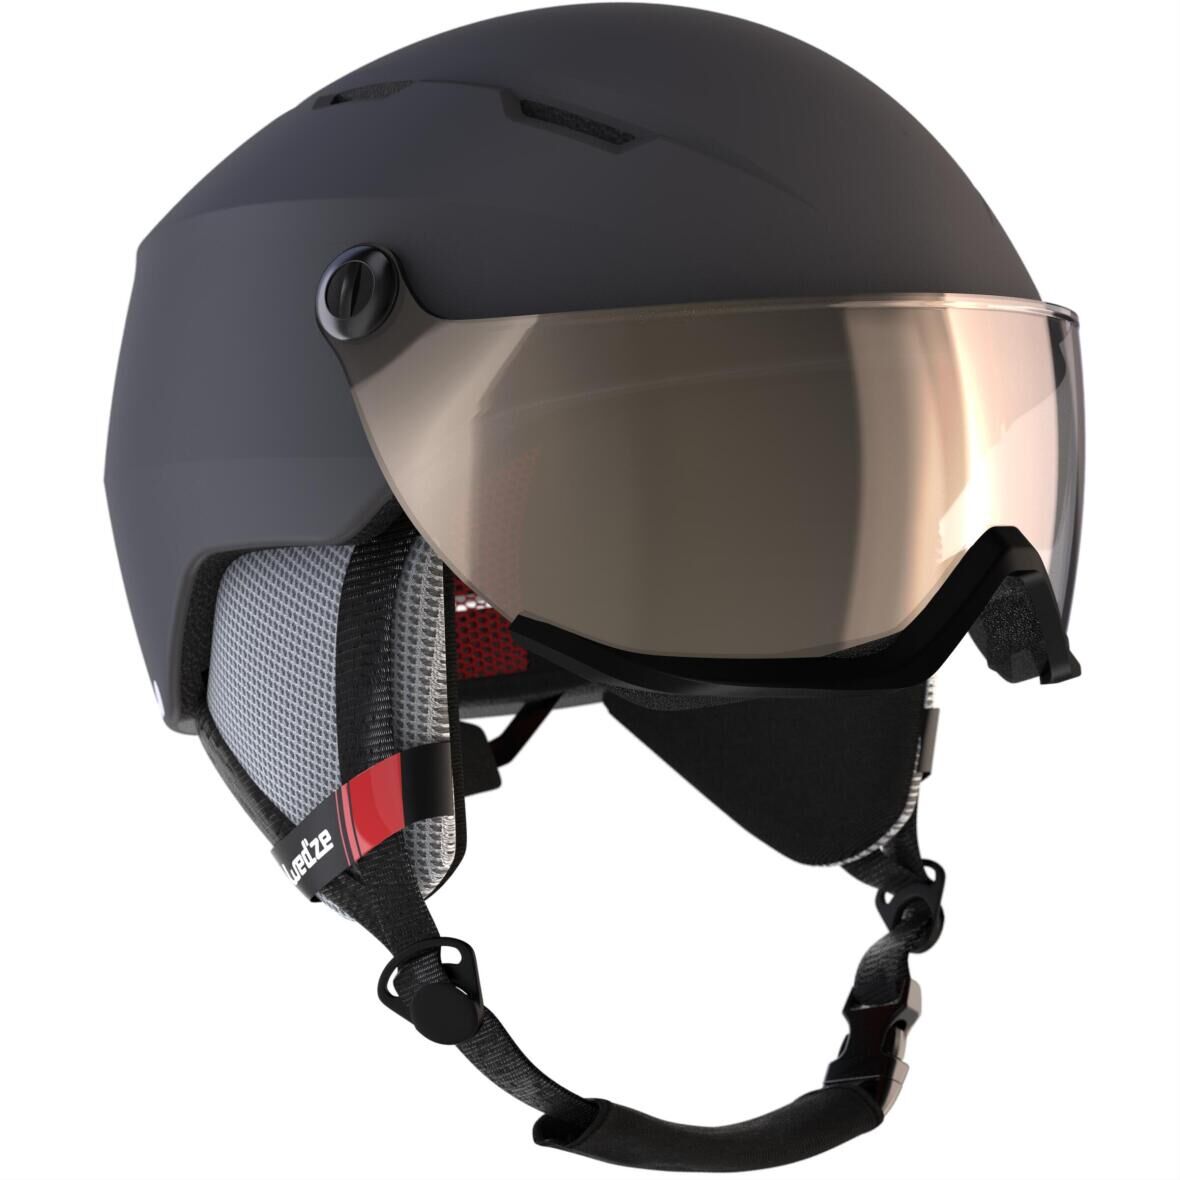 skiing visor helmet h350